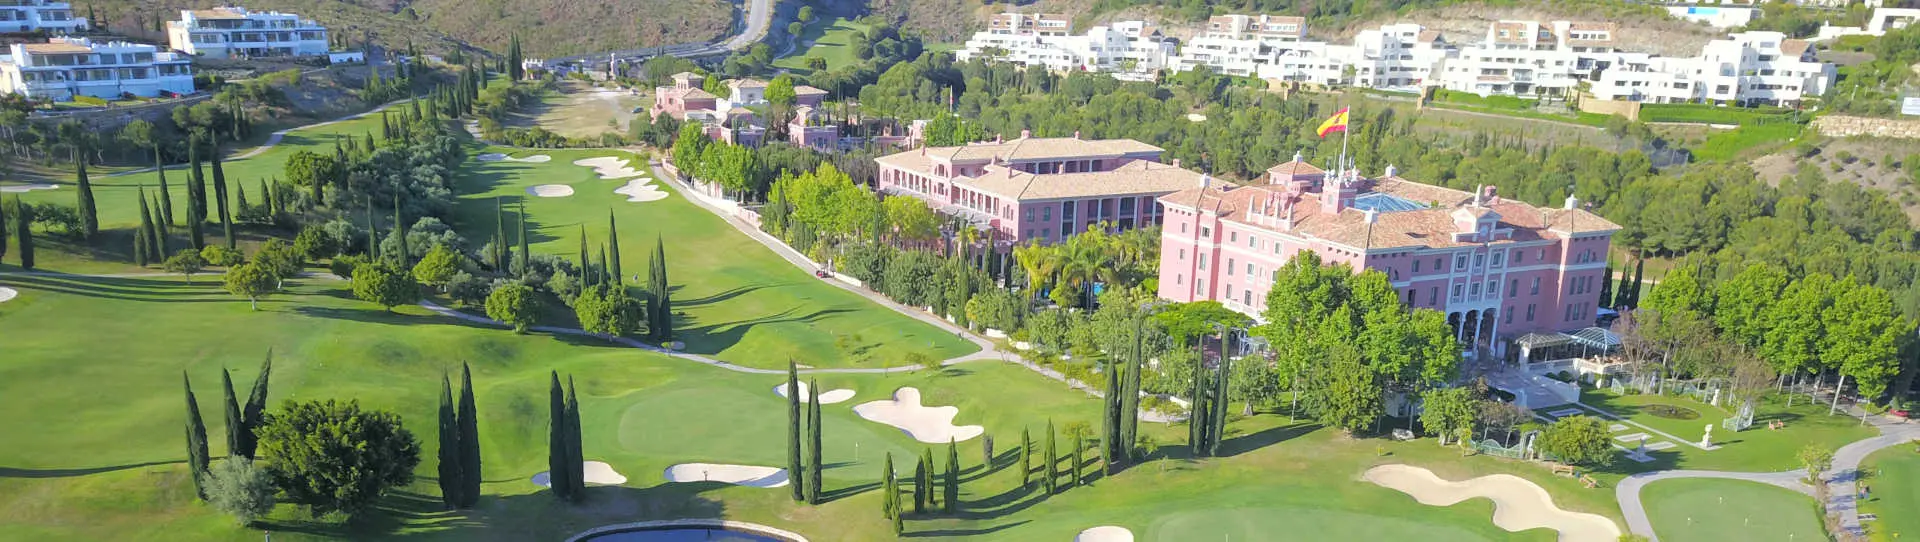 Spain golf holidays - Anantara Villa Padierna Palace Hotel G.L. - Photo 1